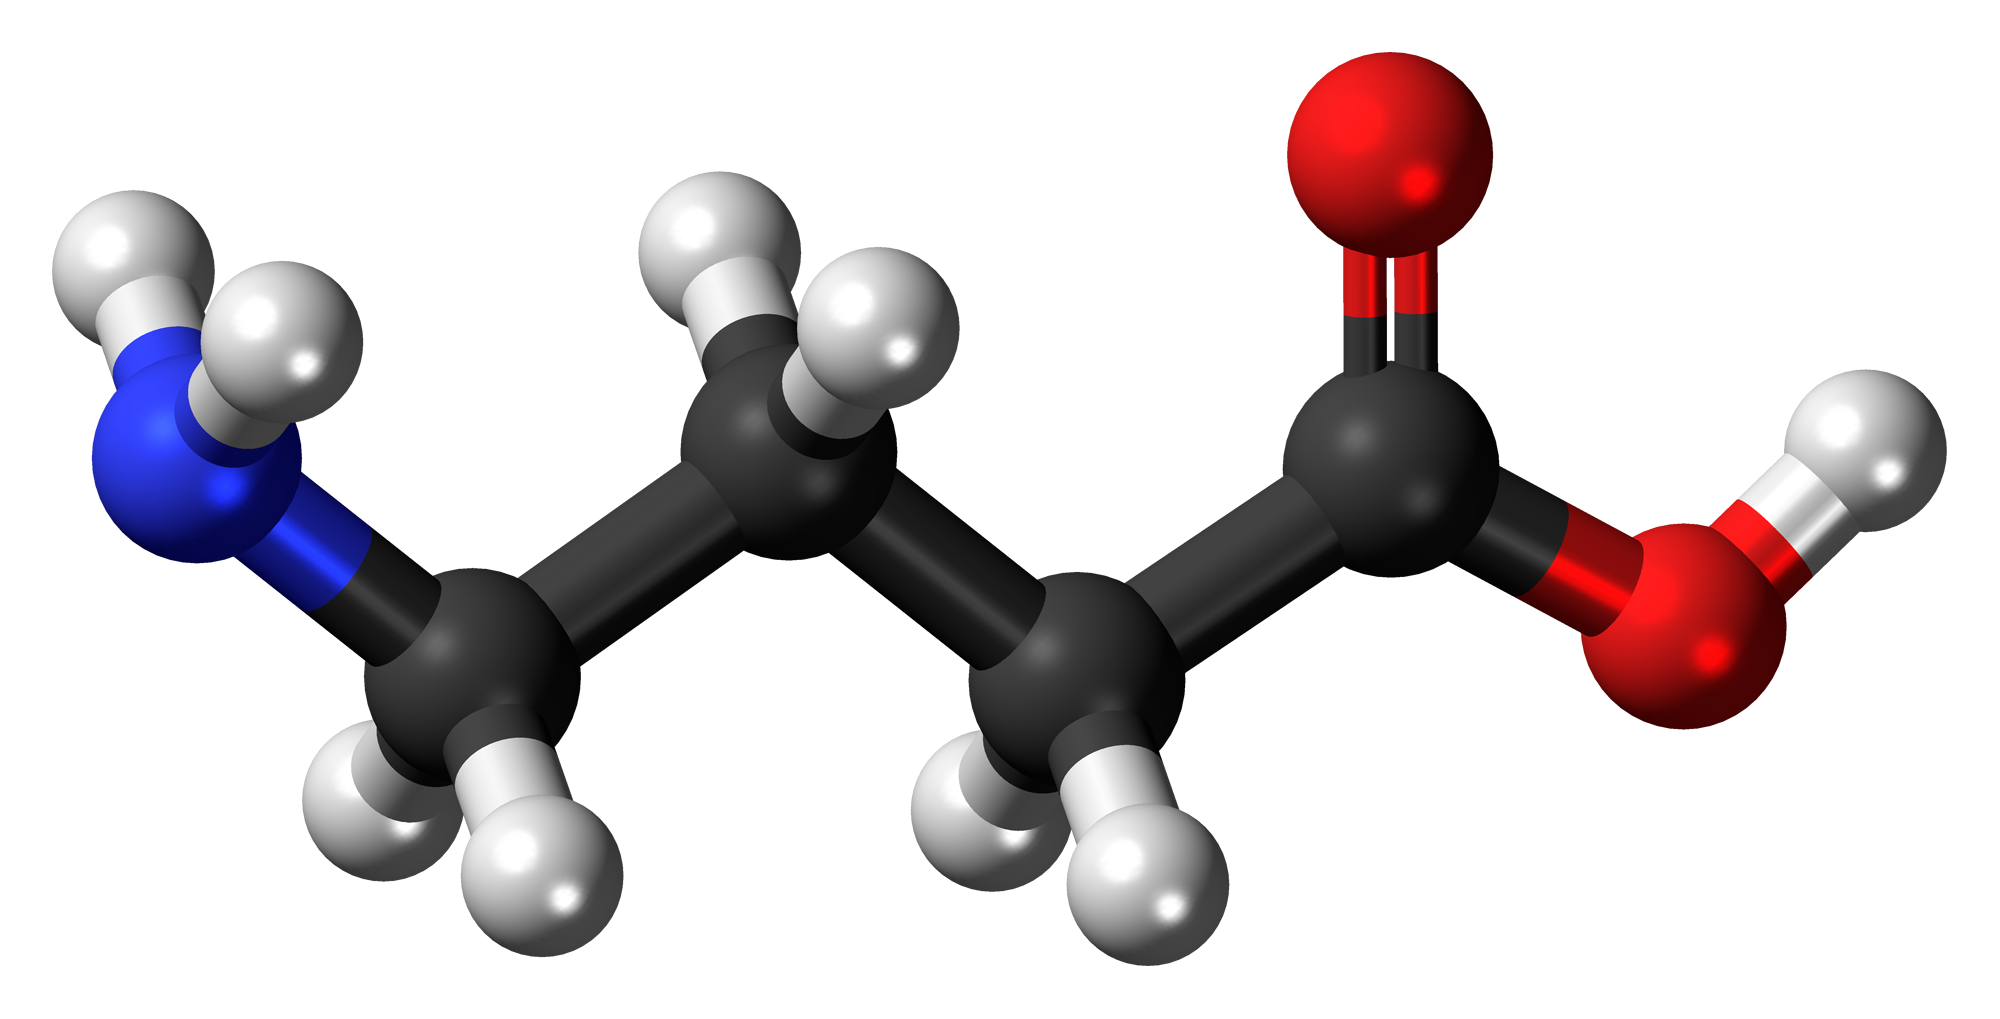 El ácido γ-aminobutírico o ácido gamma-aminobutírico, conocido generalmente por sus siglas en inglés, GABA